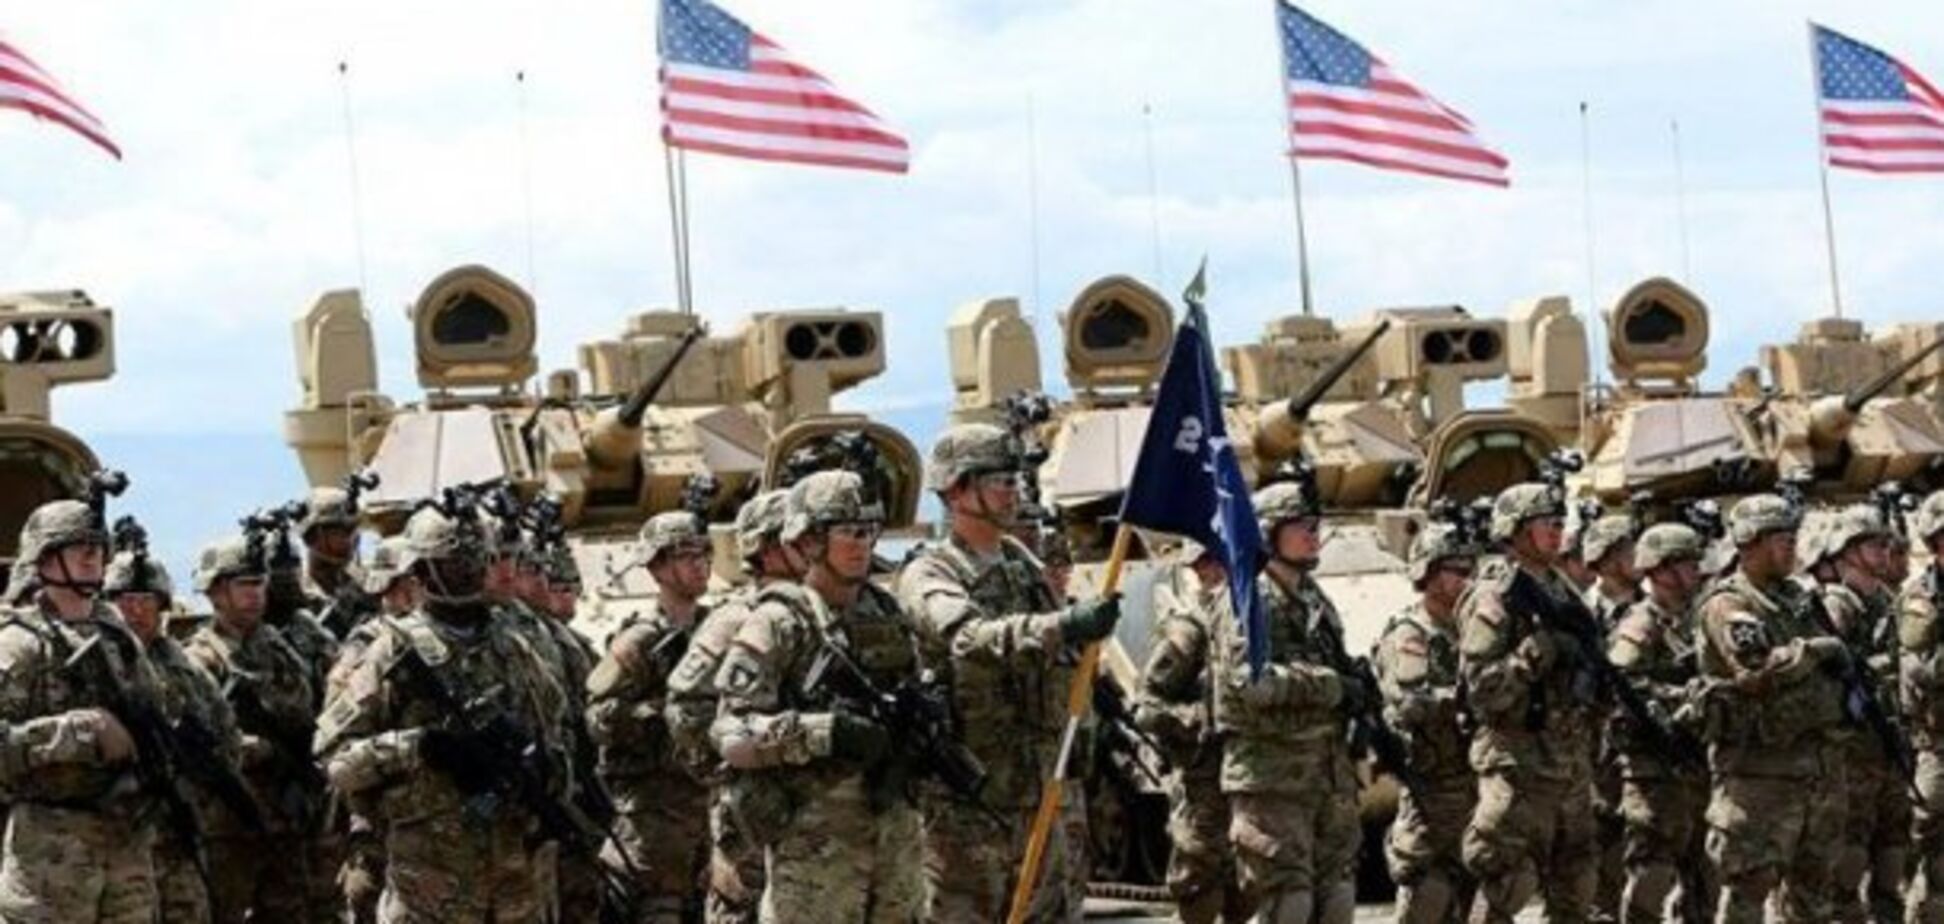 Почти половина военных США уверены в скорой войне - Military Times